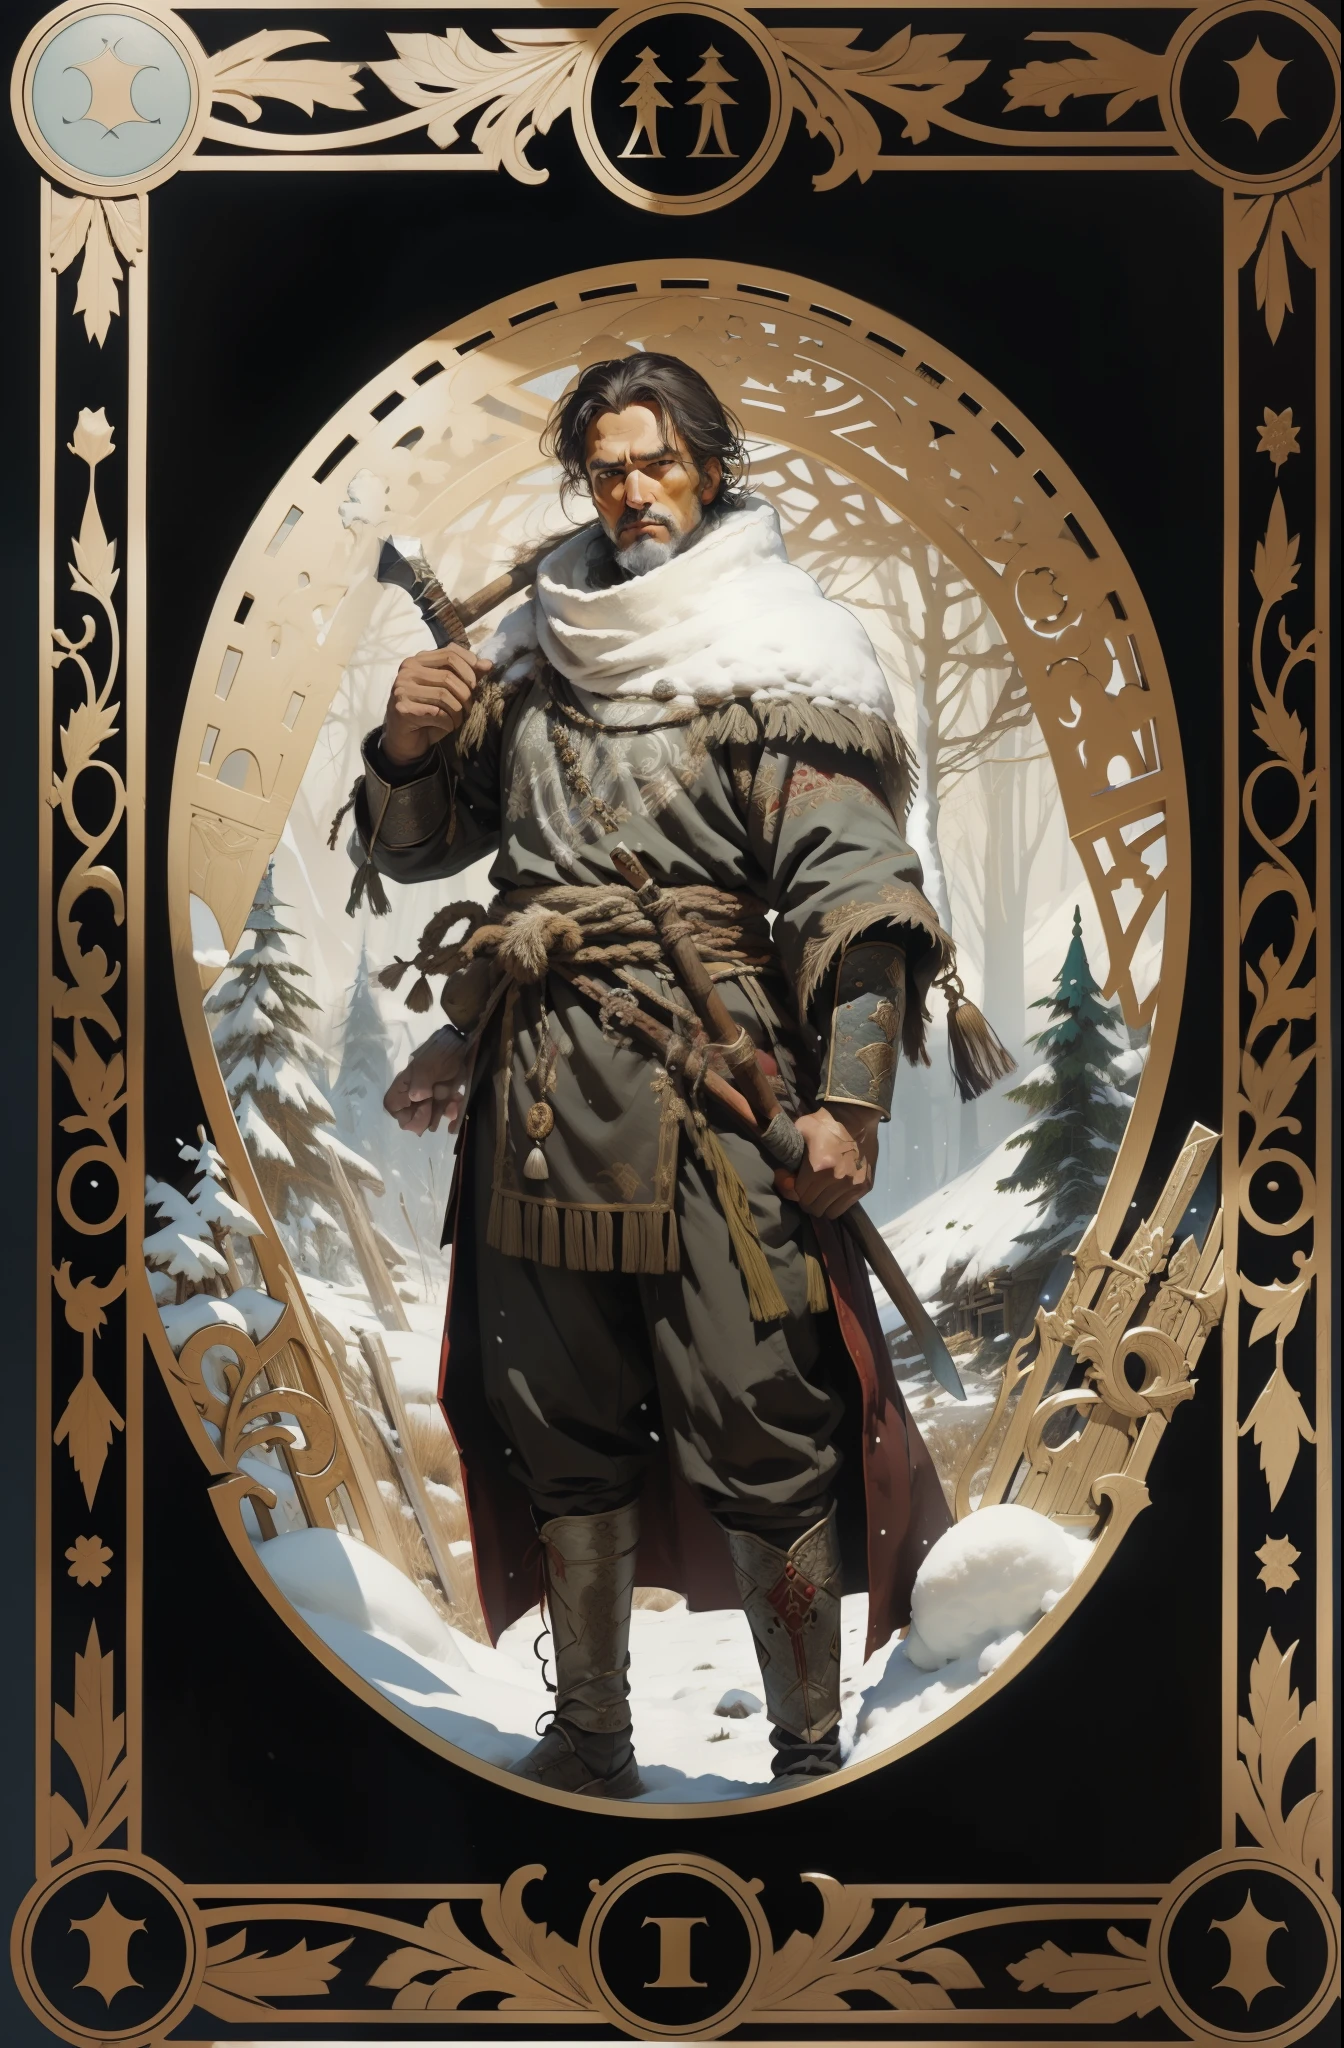 رجل, بالملابس التقليدية لشعوب الشمال, بفأس في يديه, خلفية غابة الثلج, نمط التارو, إطار منقوش في العصور الوسطى